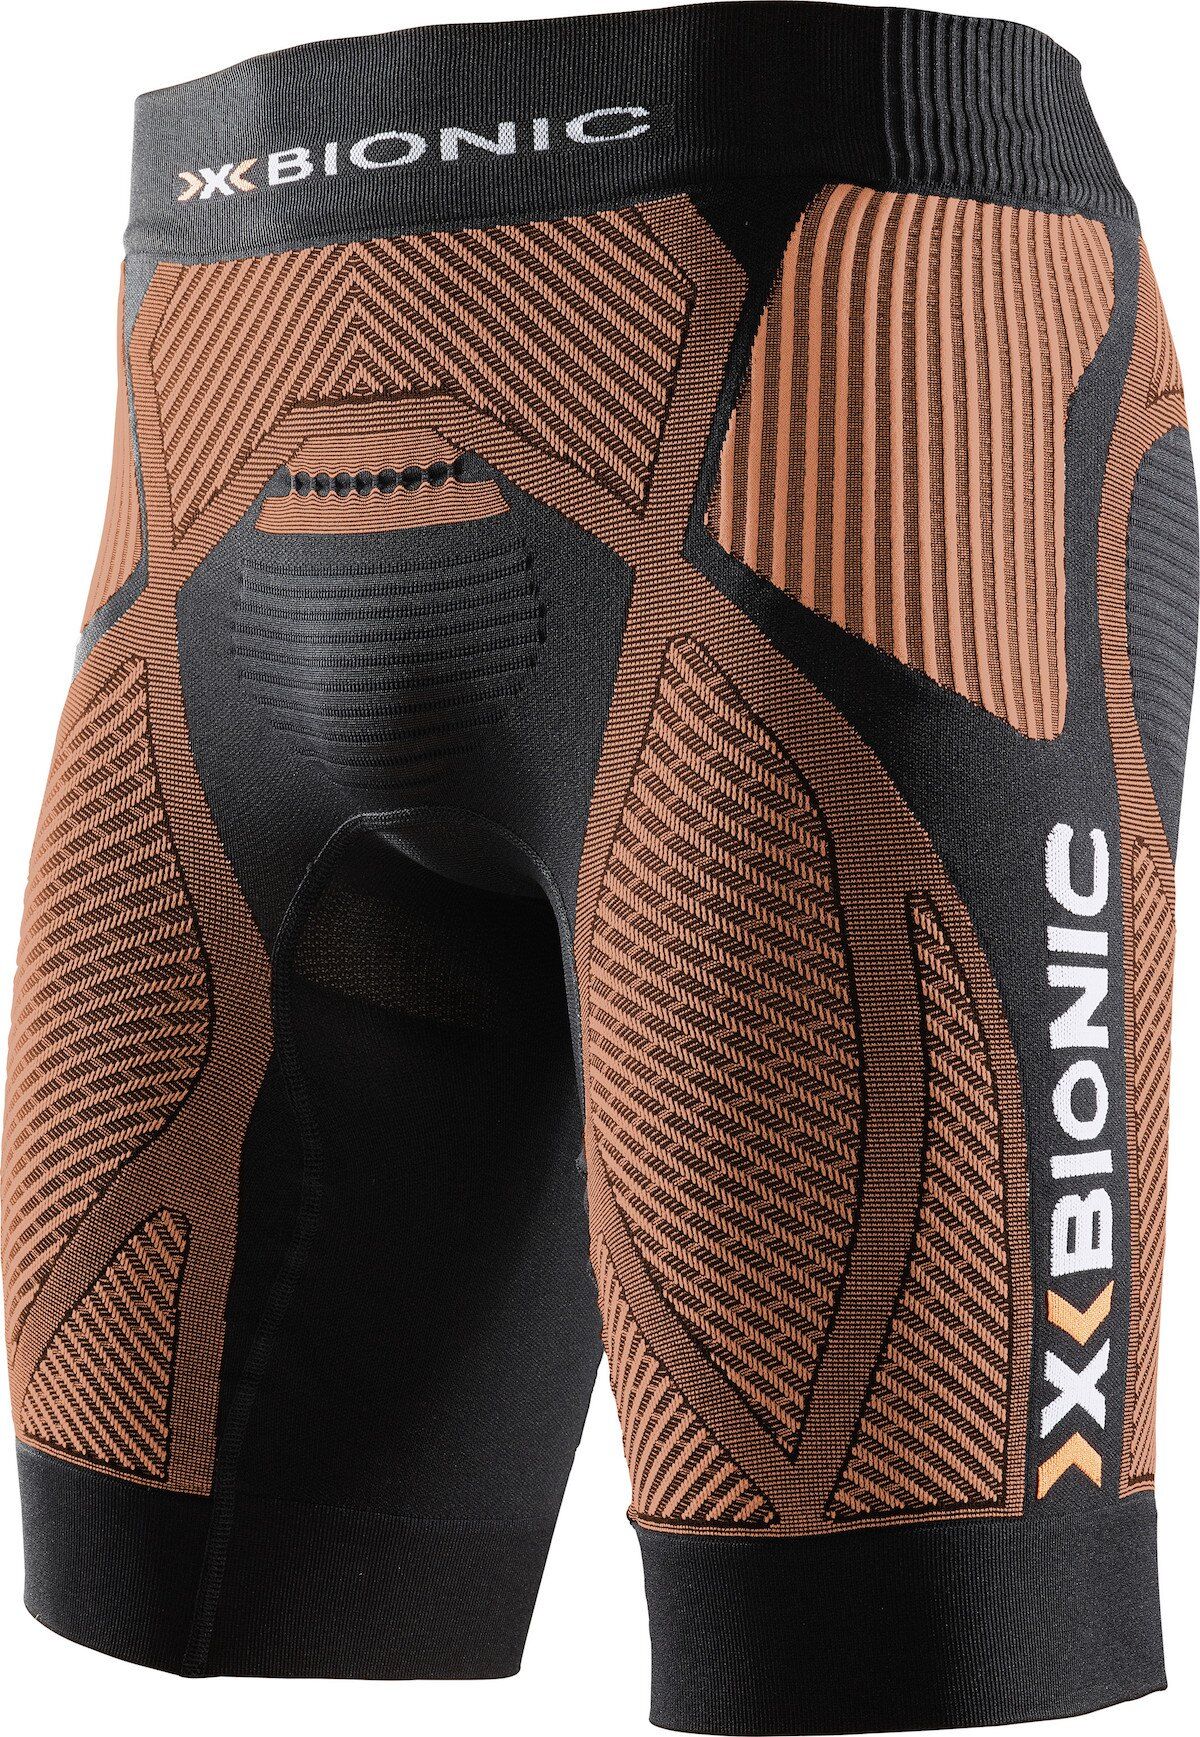 X-Bionic - The Trick - Pantalón corto running - Hombre